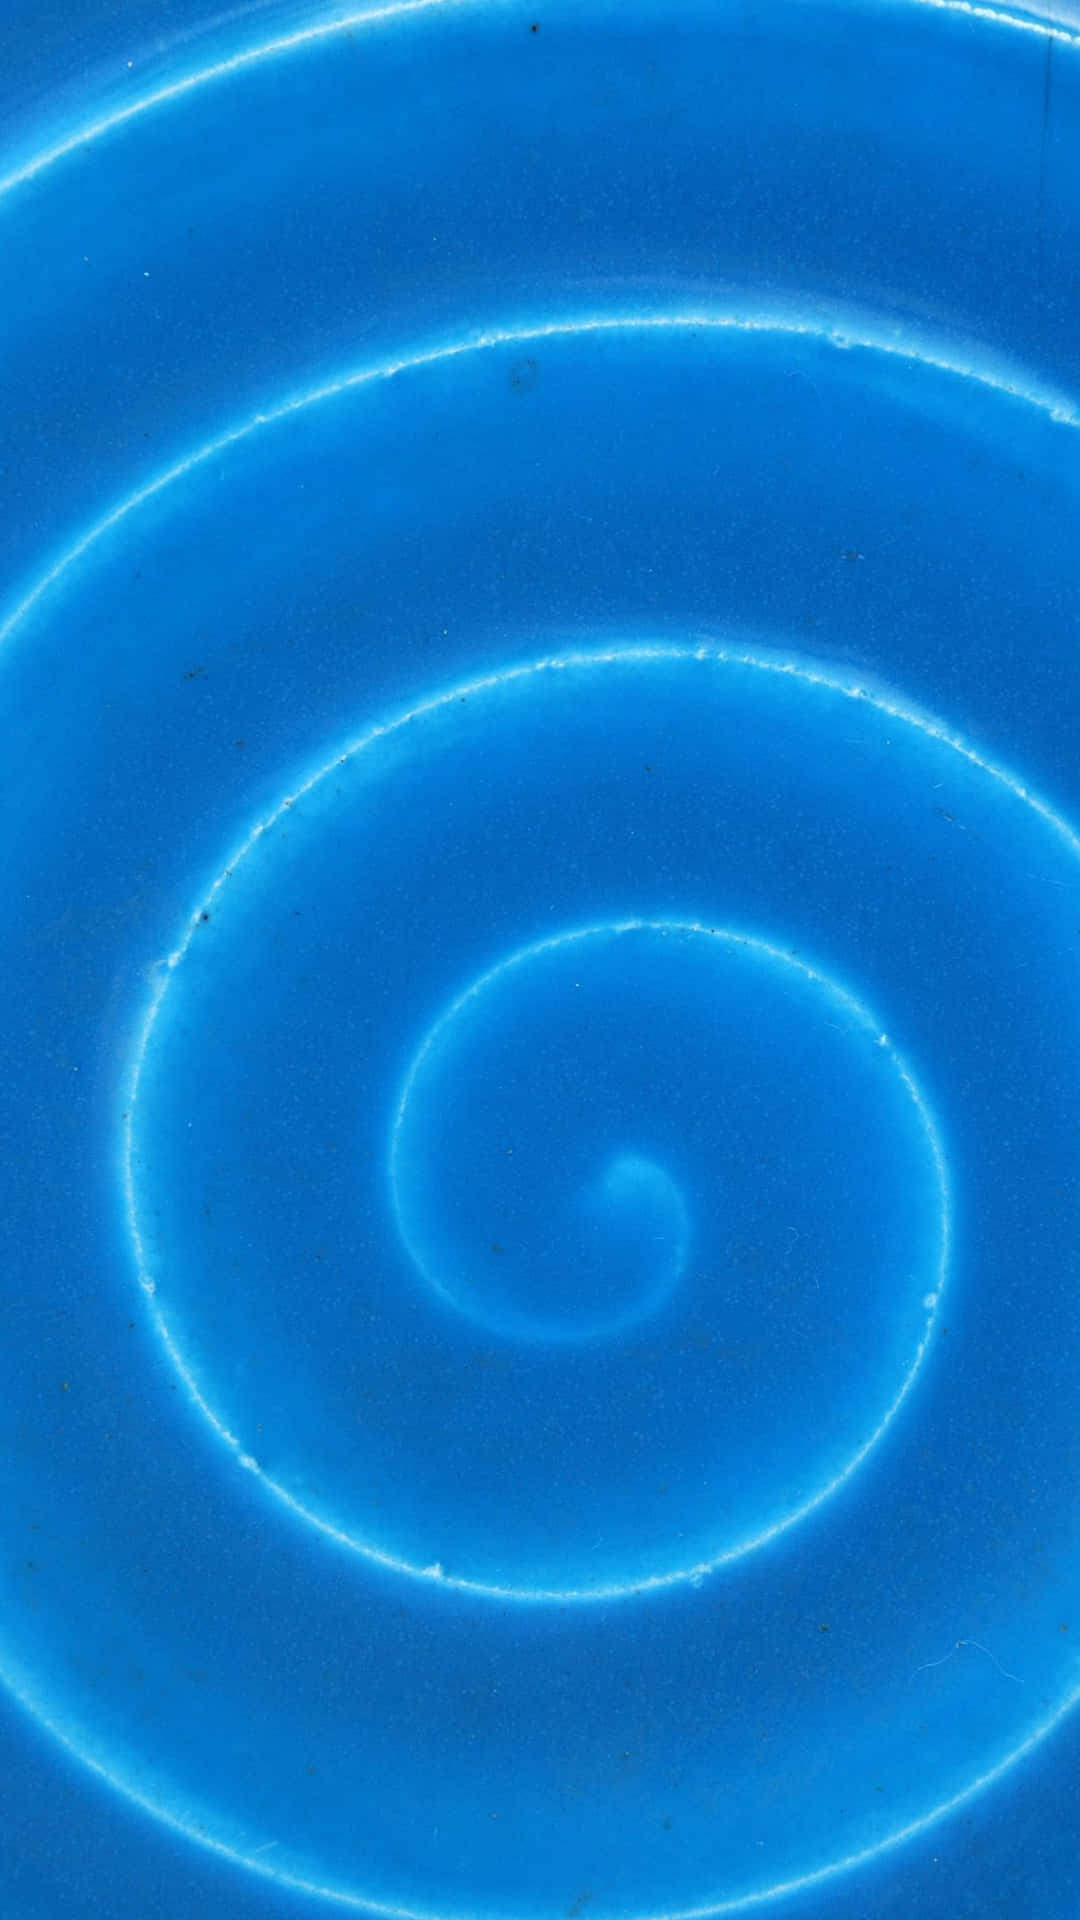 Faiuna Dichiarazione Con Questo Vivace Sfondo A Spirale Blu